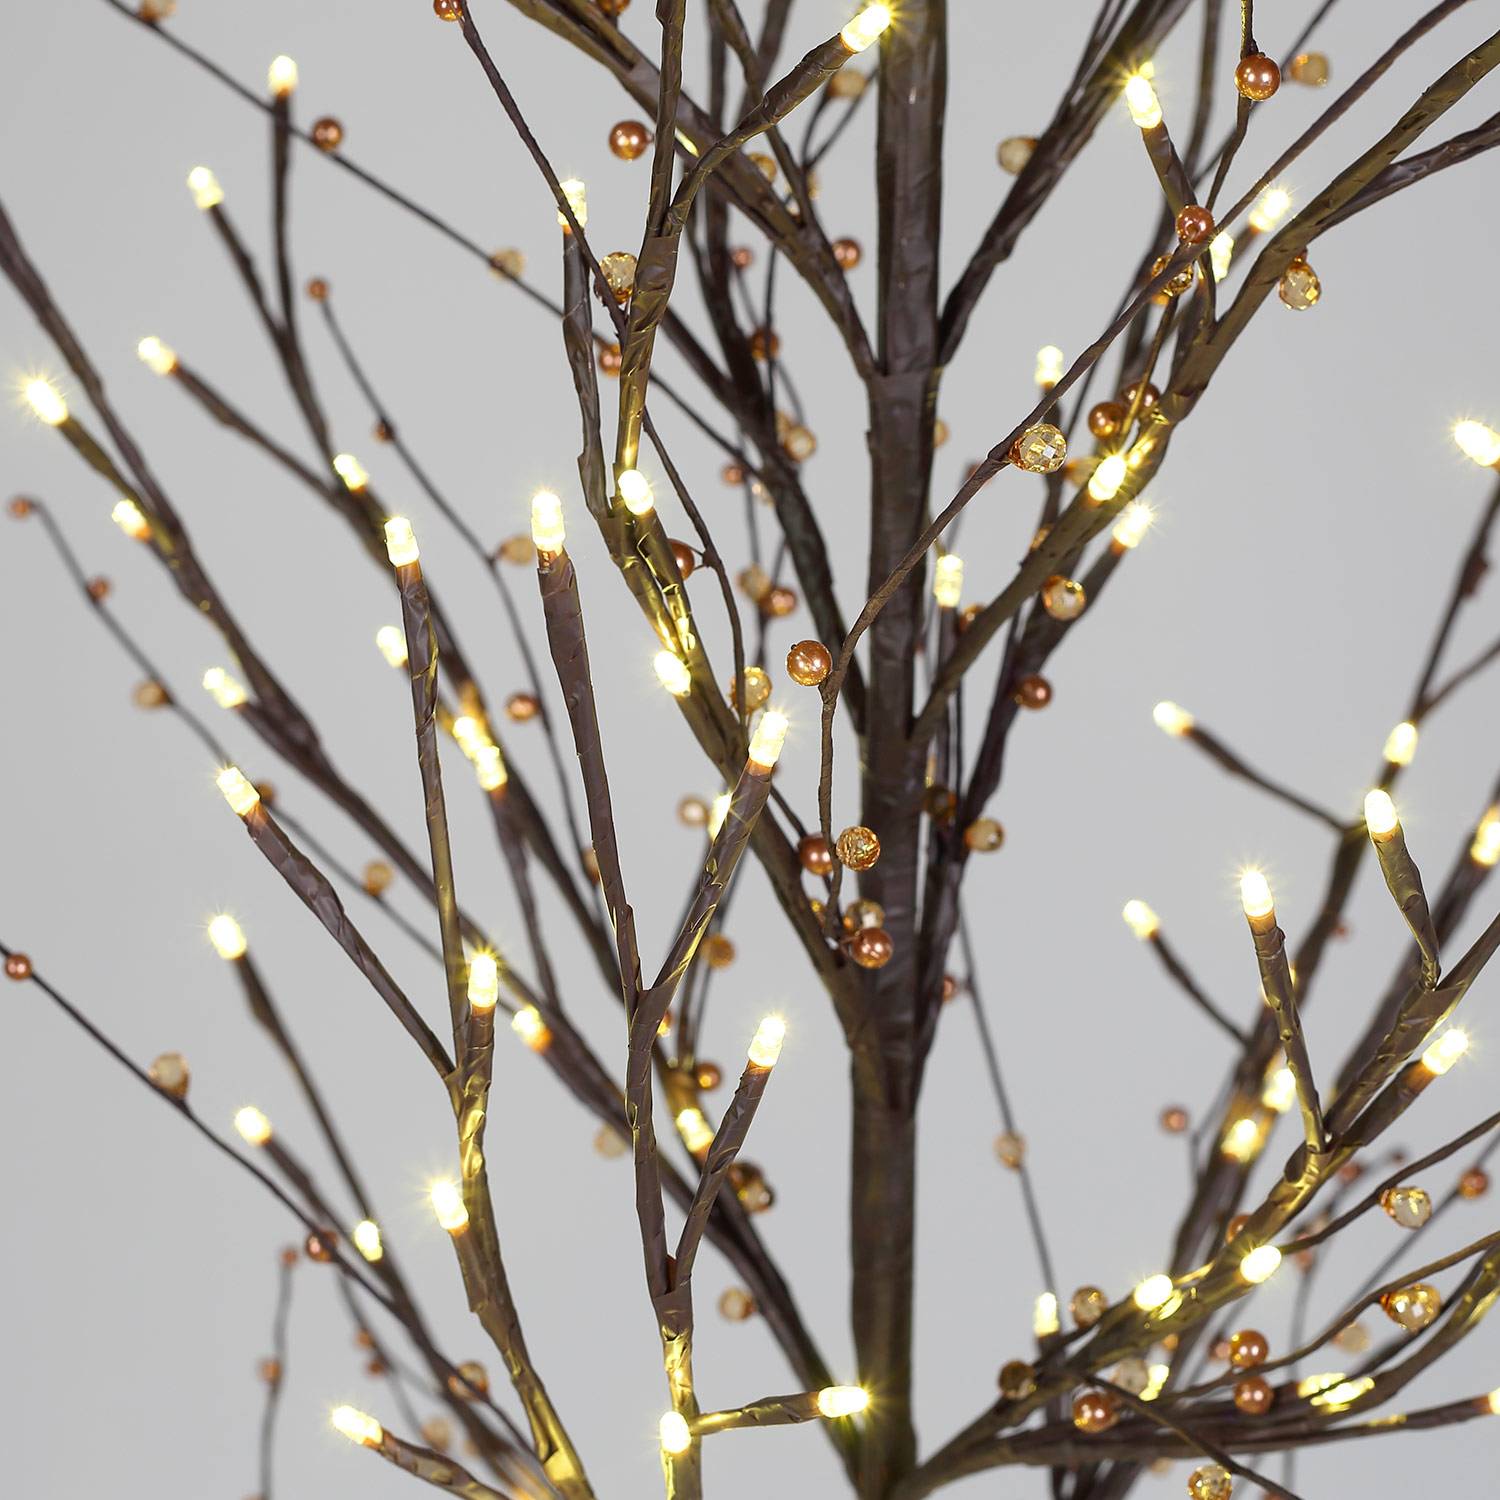 Lichtboom van 180 cm, 200 LEDs, parels en kralen, inclusief voet, kerstversiering Photo5